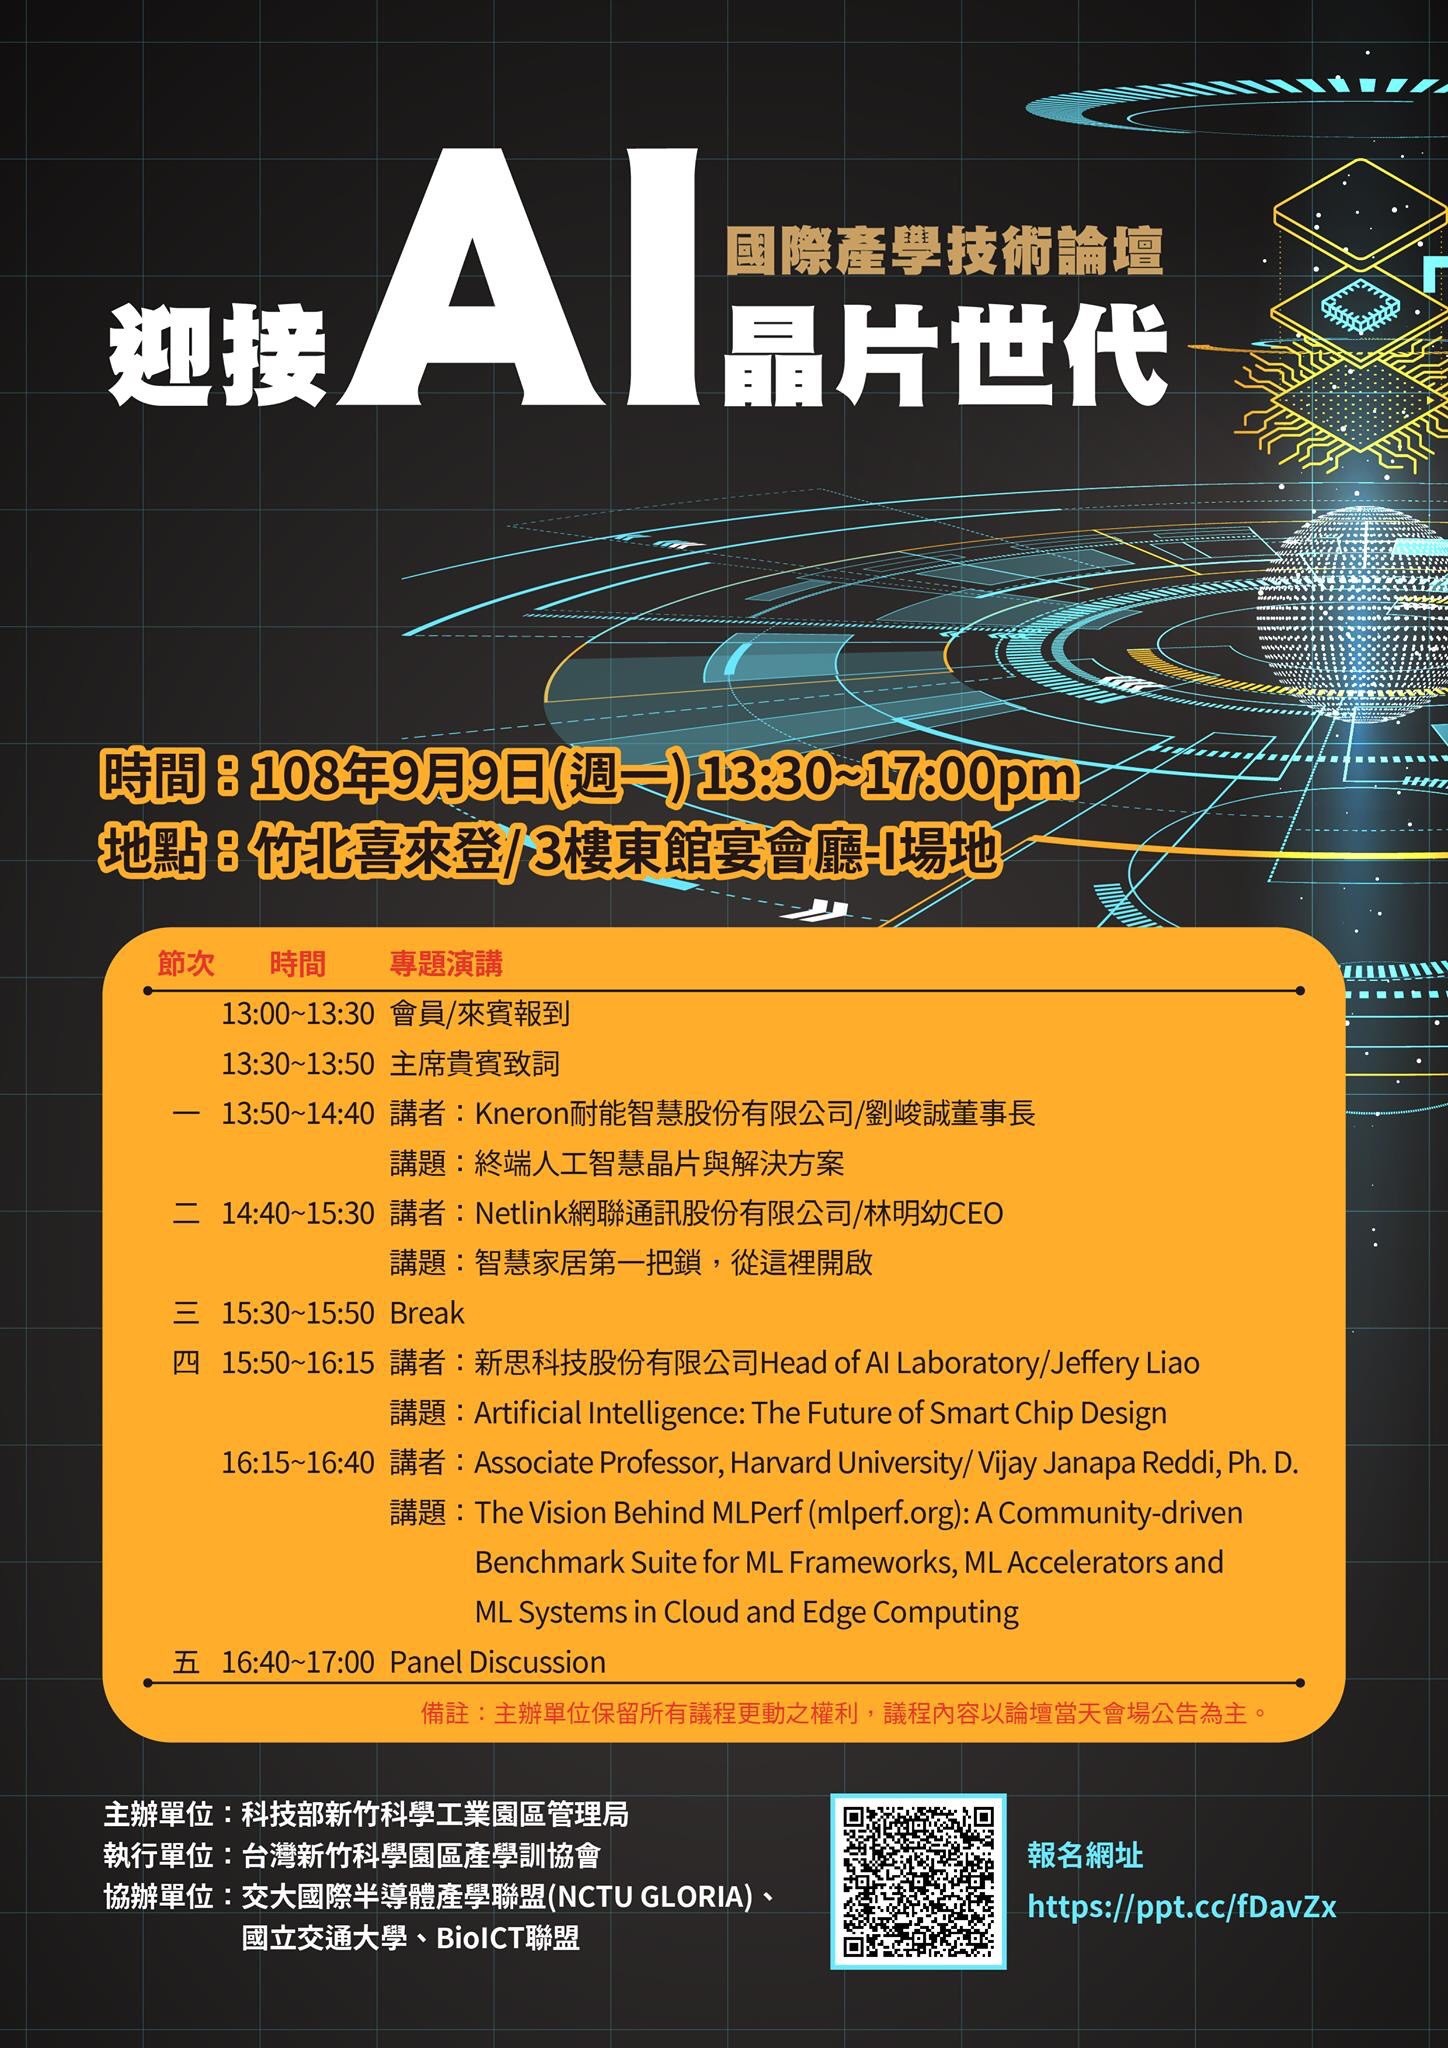 迎接AI晶片世代-國際產學技術論壇海報